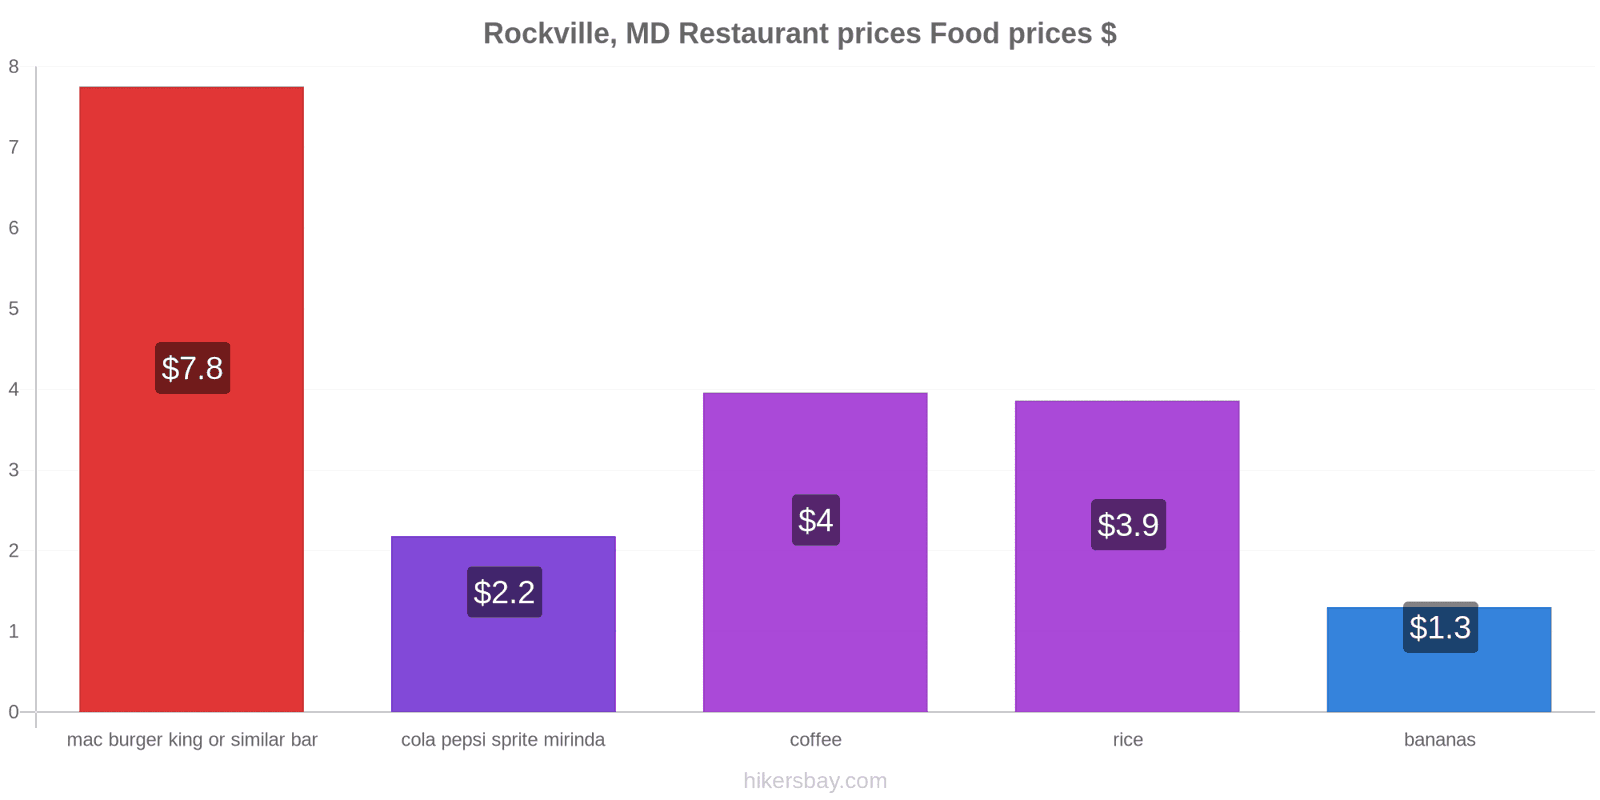 Rockville, MD price changes hikersbay.com